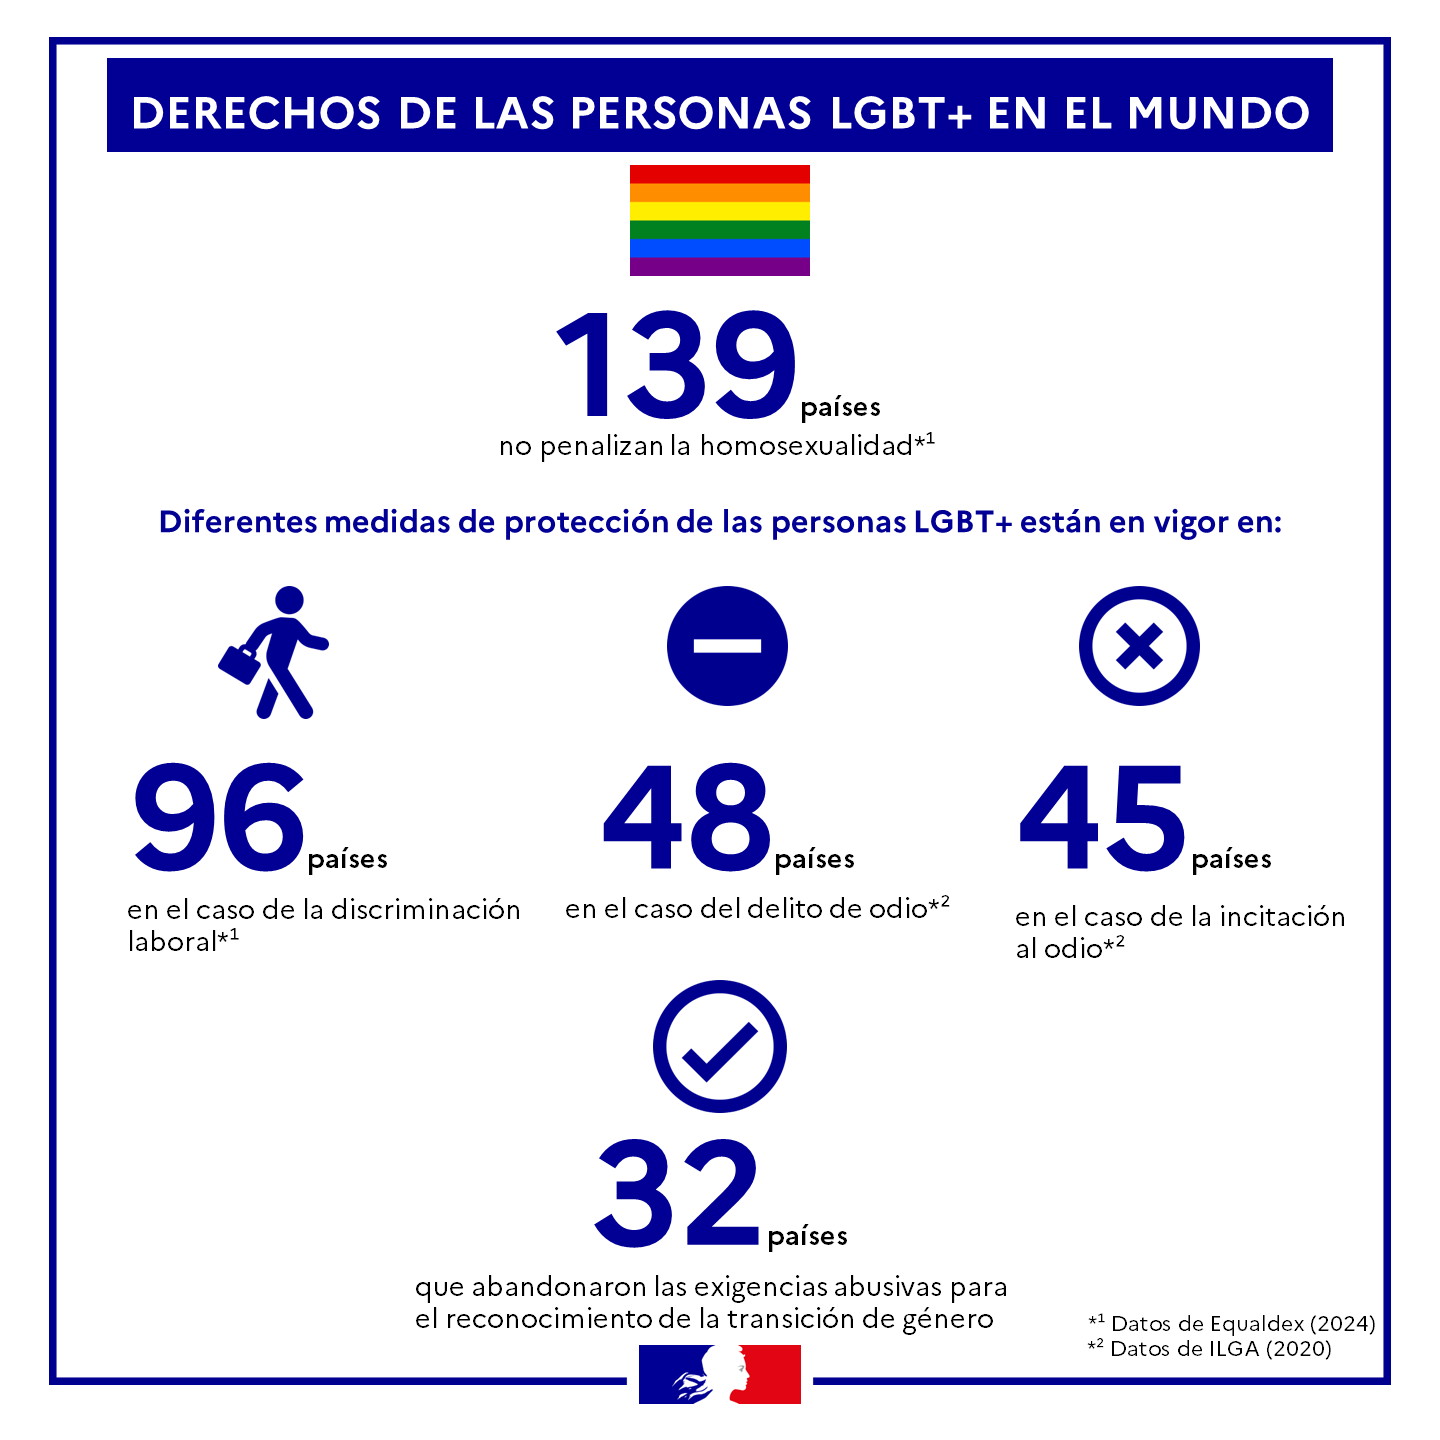 Derechos de las personas LGBT+ en el mundo